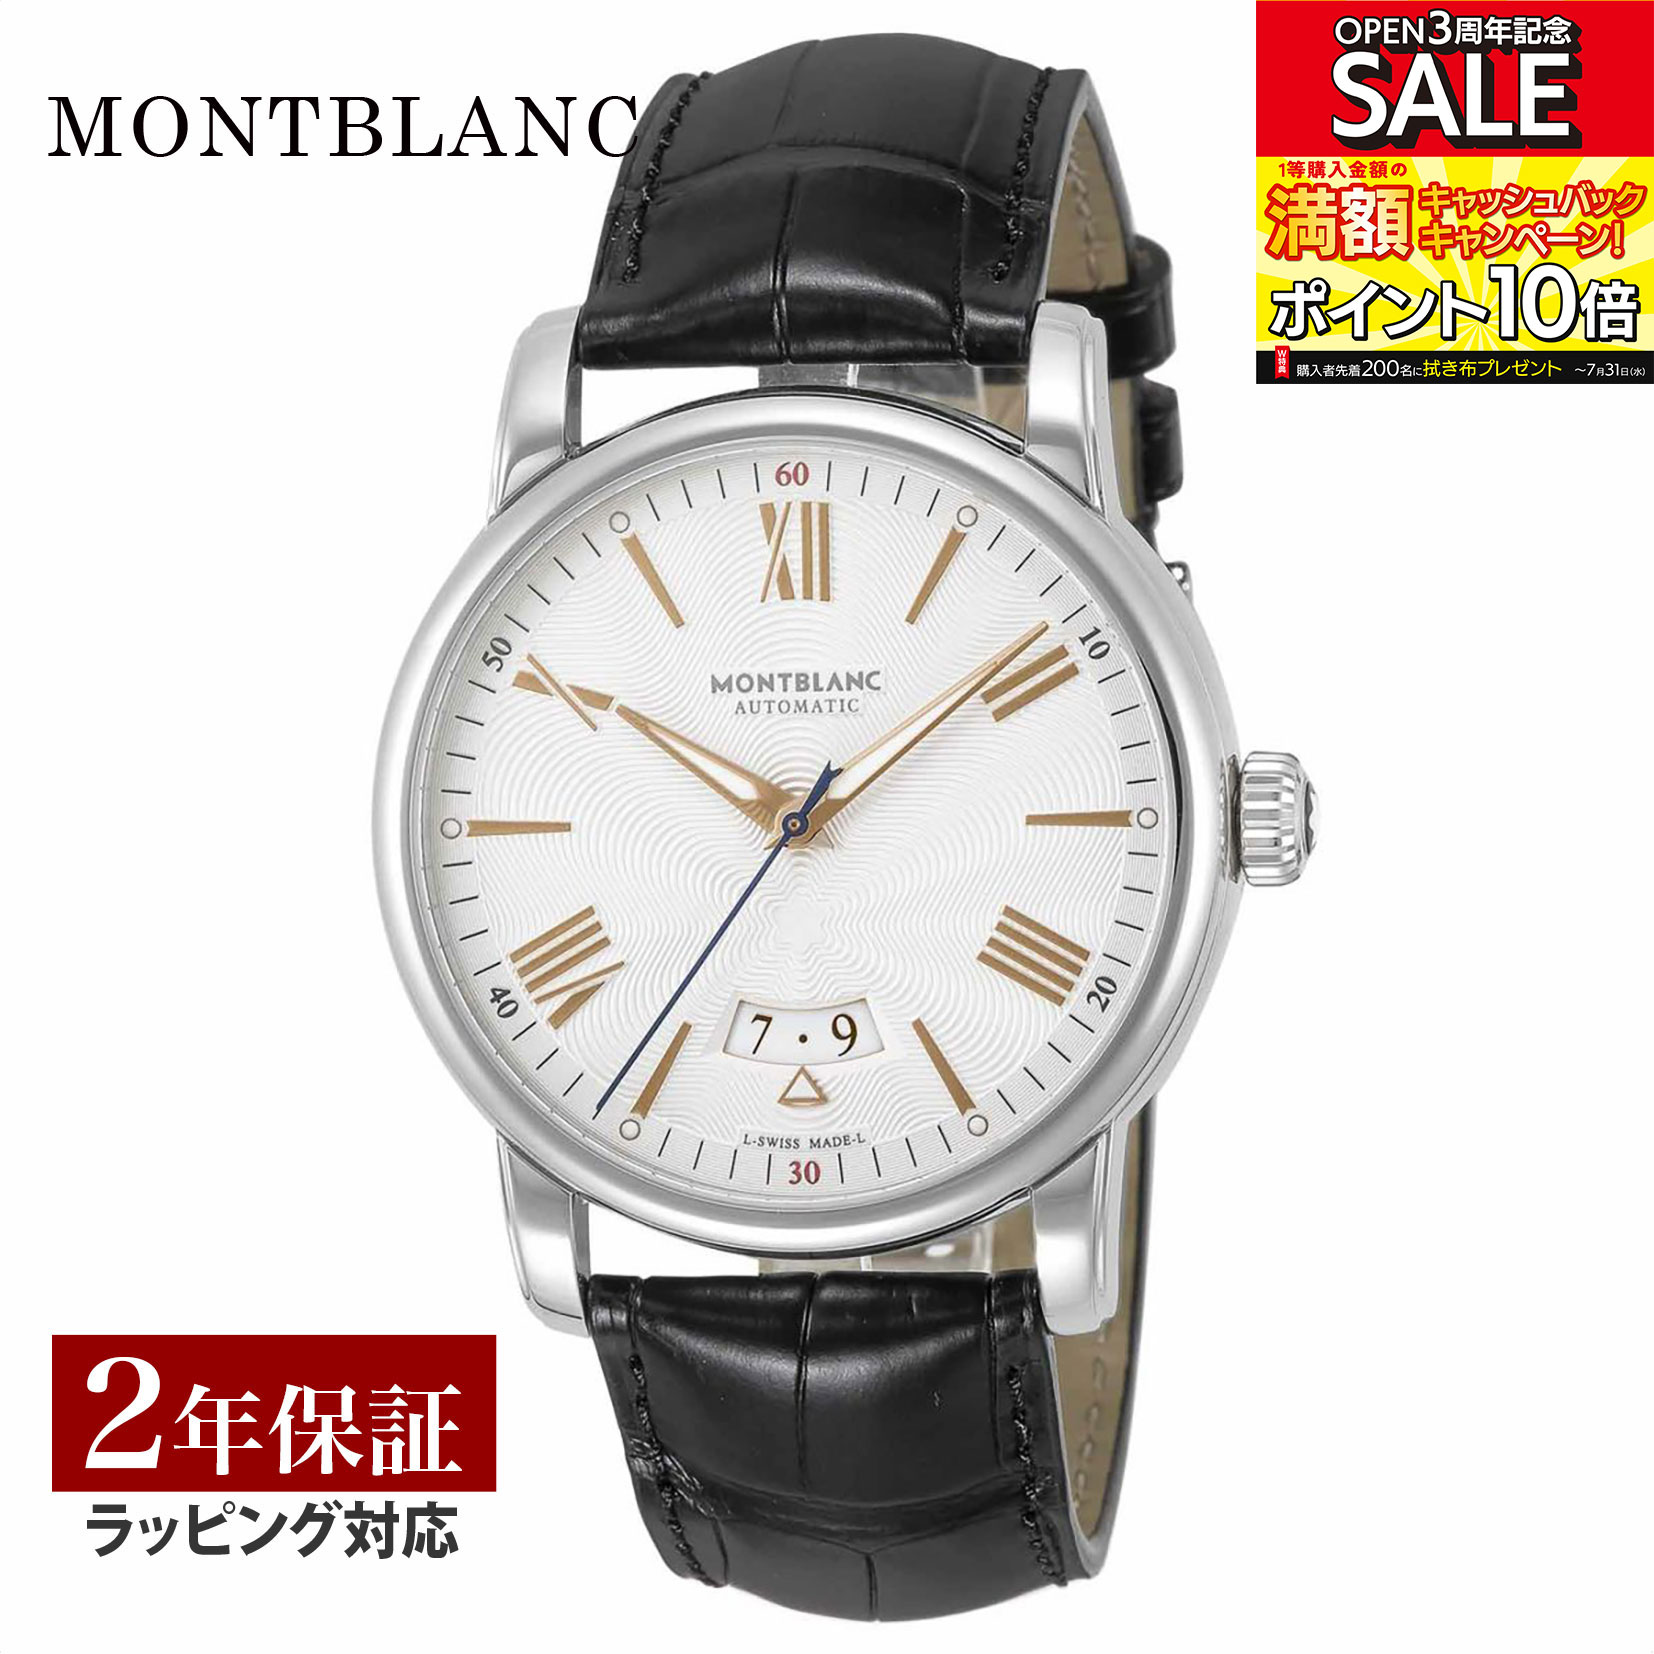 モンブラン ビジネス腕時計 メンズ モンブラン Montblanc メンズ 時計 4810 自動巻 シルバー 114841 時計 腕時計 高級腕時計 ブランド 【ローン金利無料】